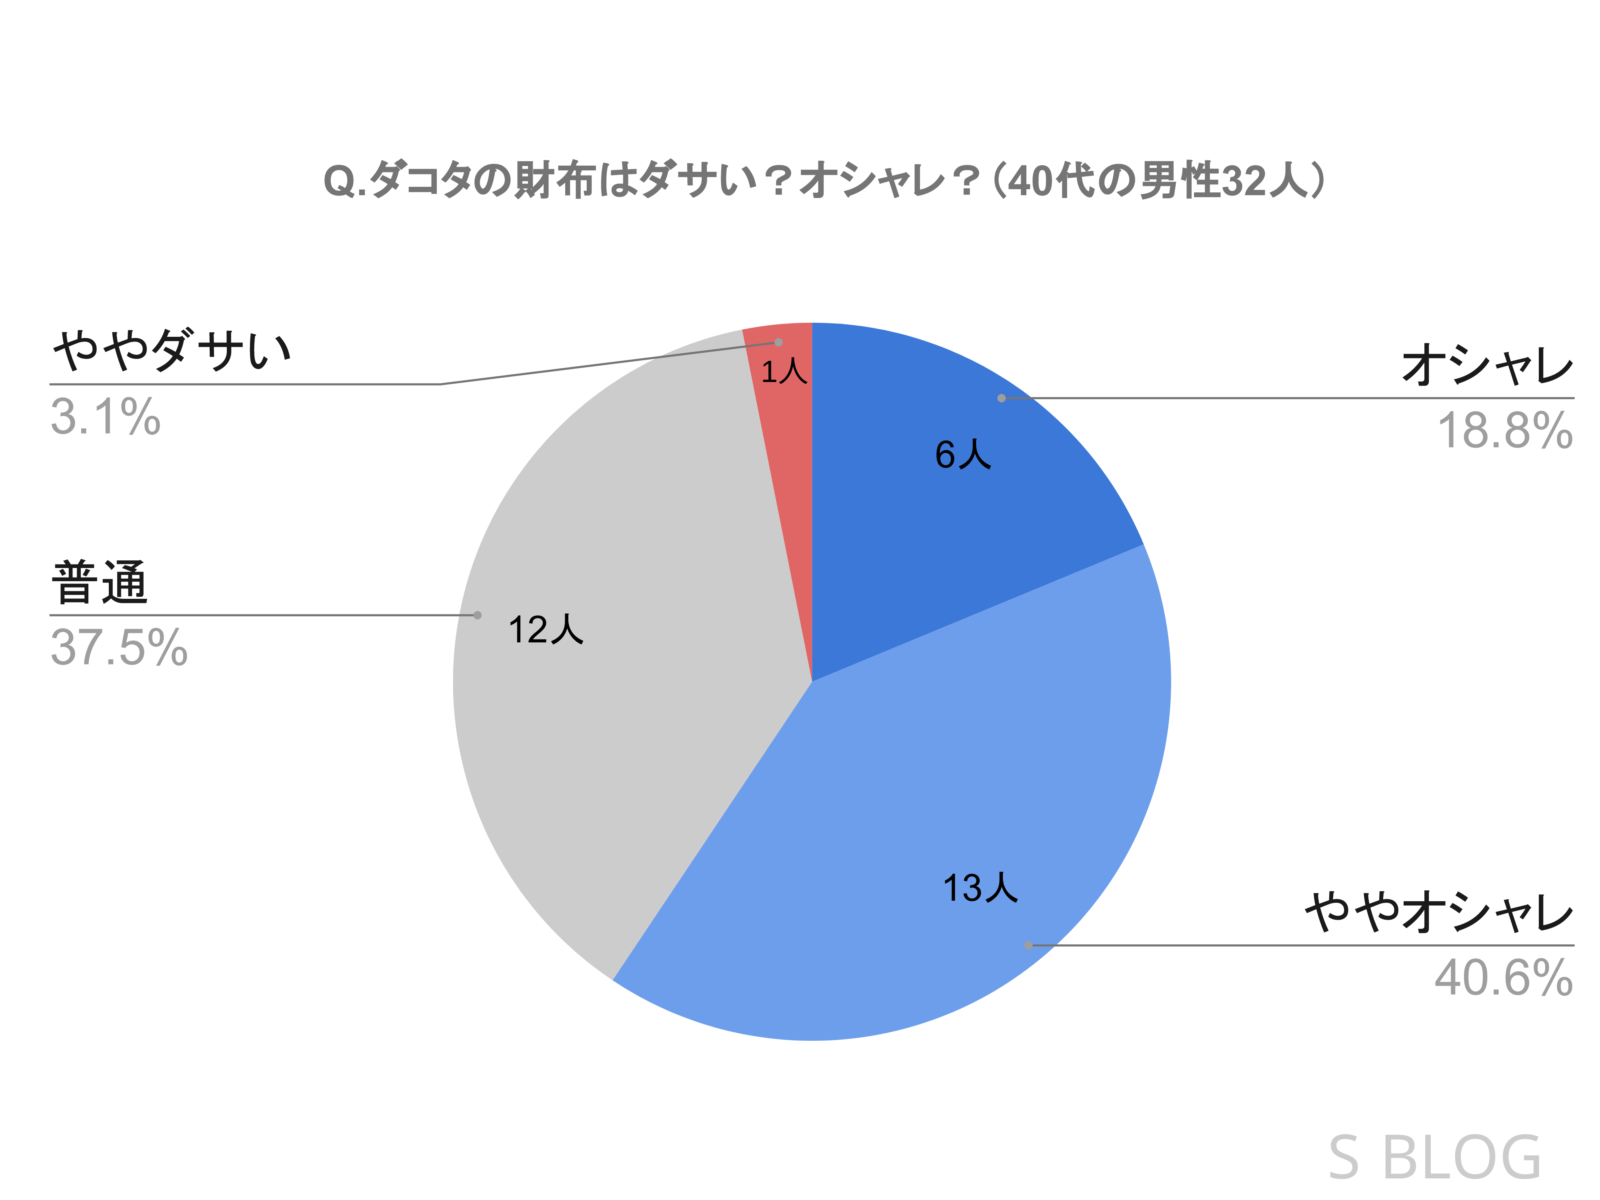 「ダコタの財布ダサいか？それともオシャレか？」という質問に対する40代男性32人の評判を表した円グラフ